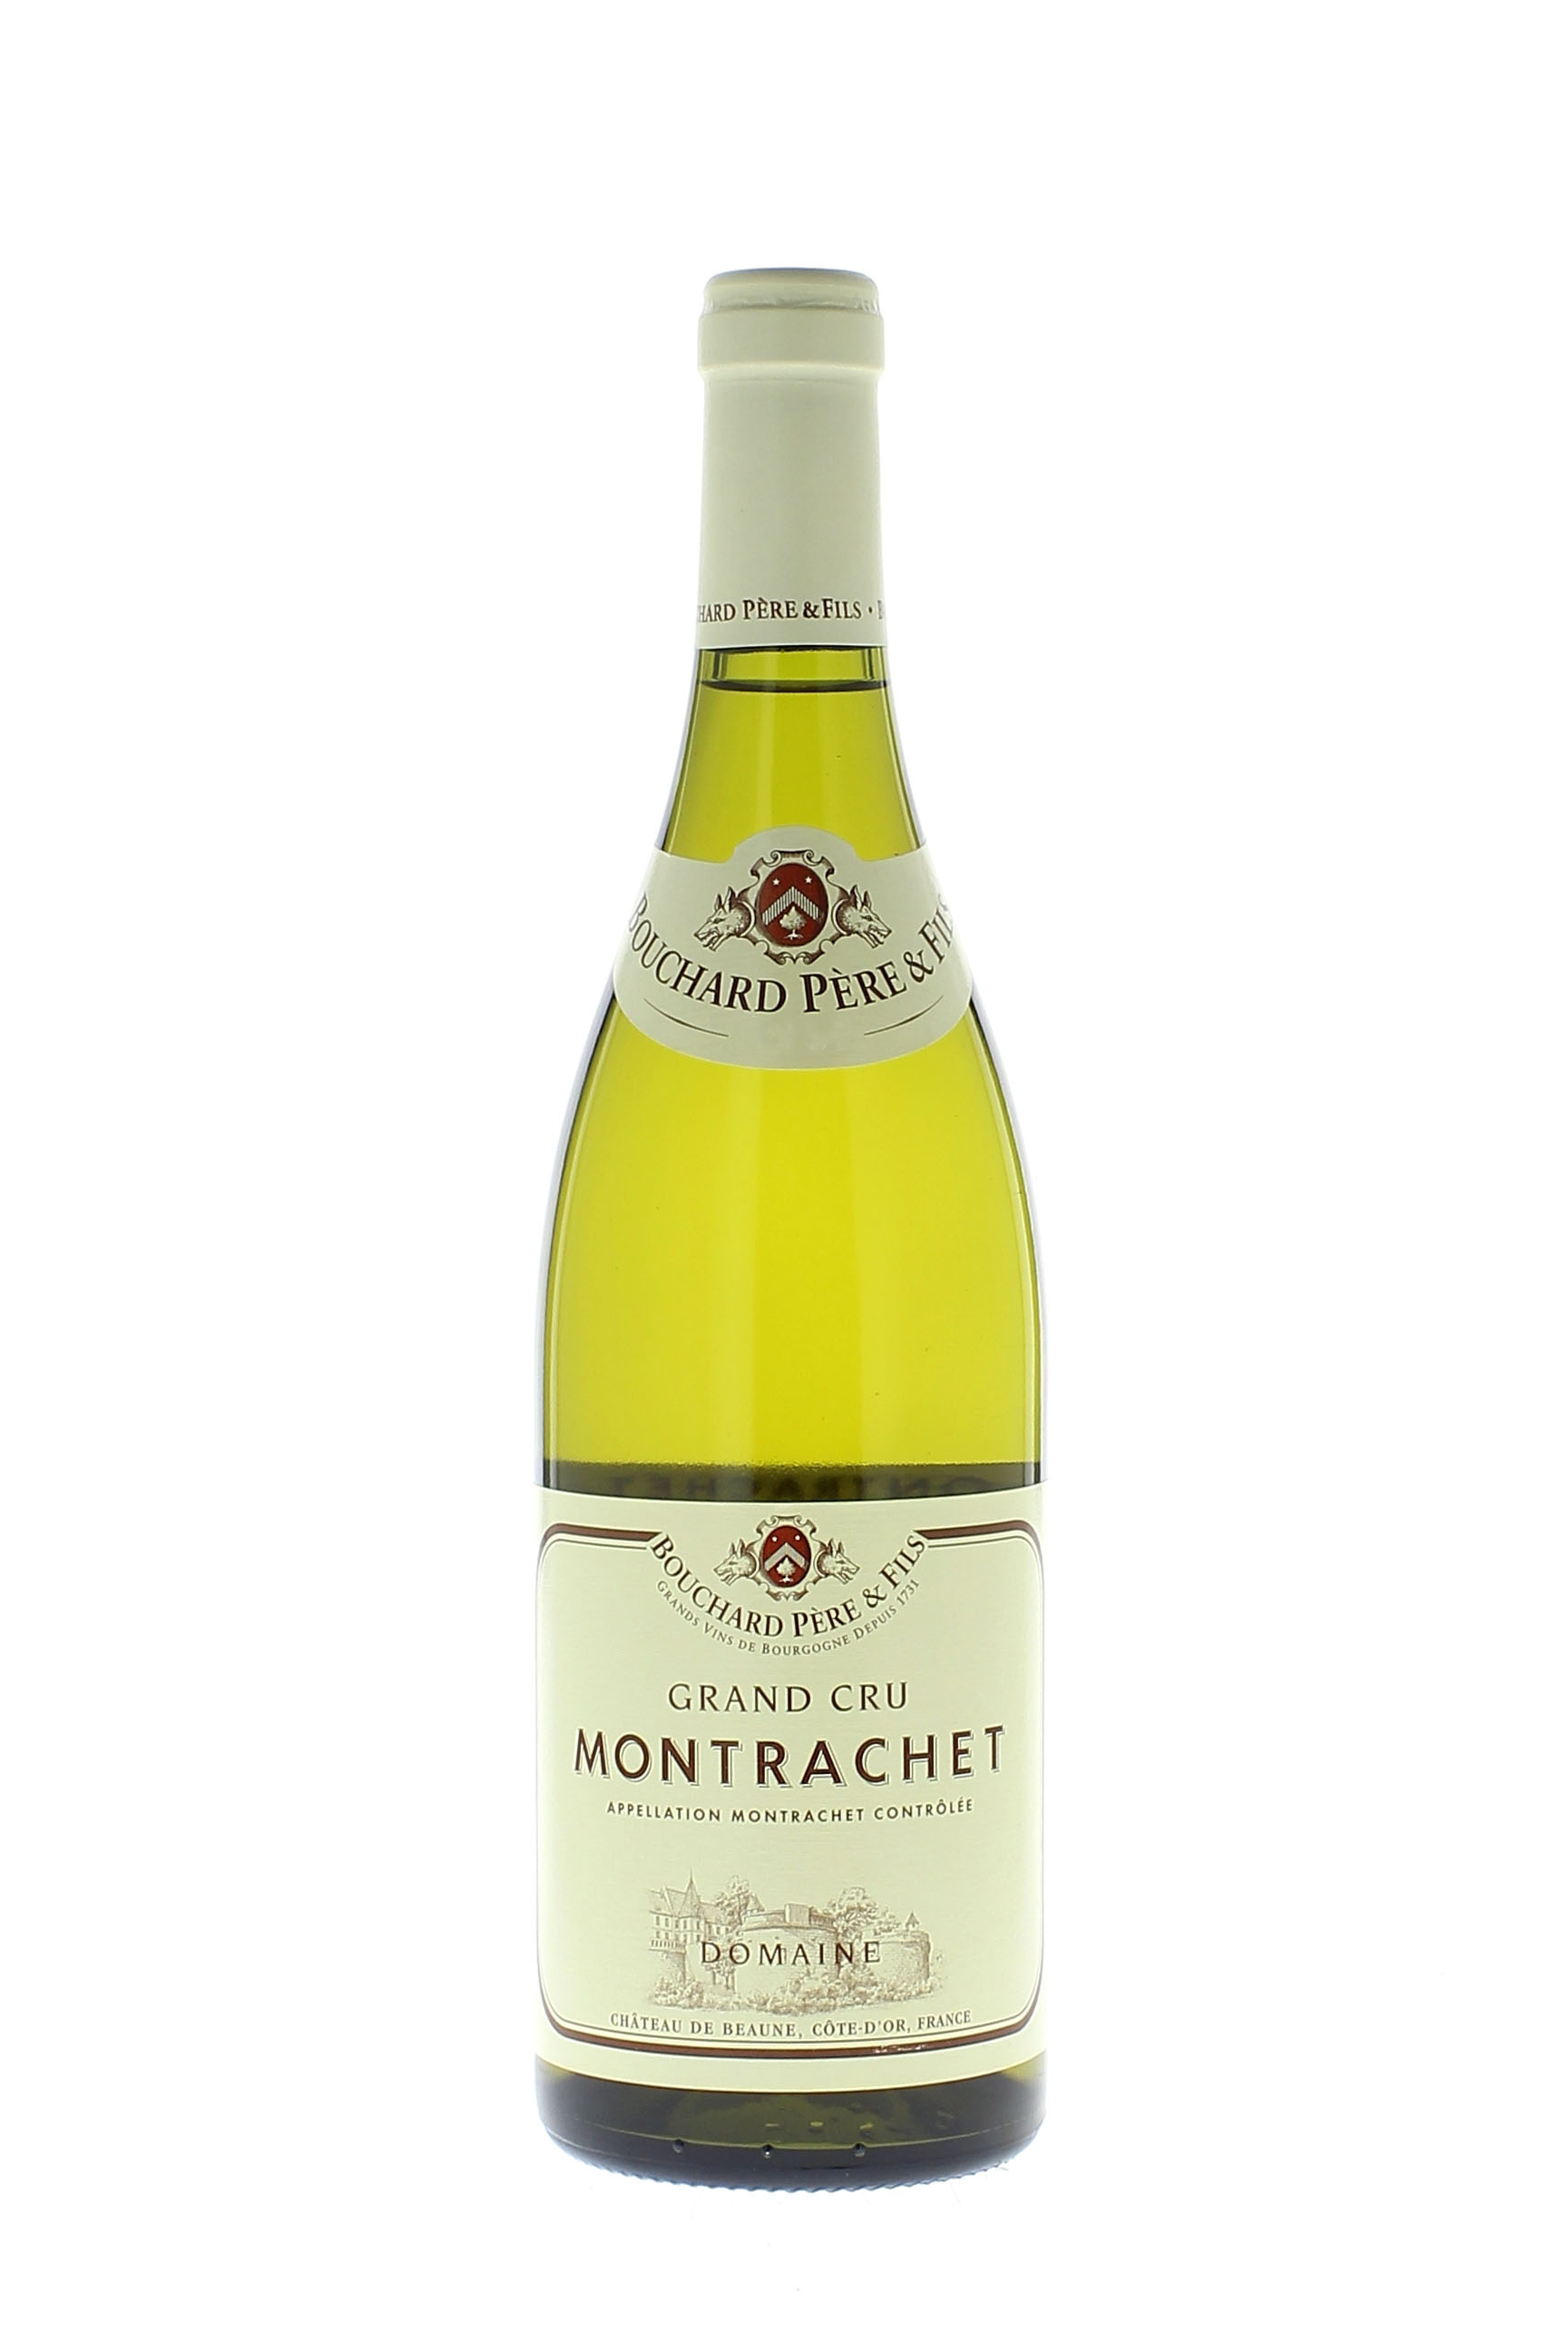 Montrachet grand cru 2003  BOUCHARD Pre et fils, Bourgogne blanc